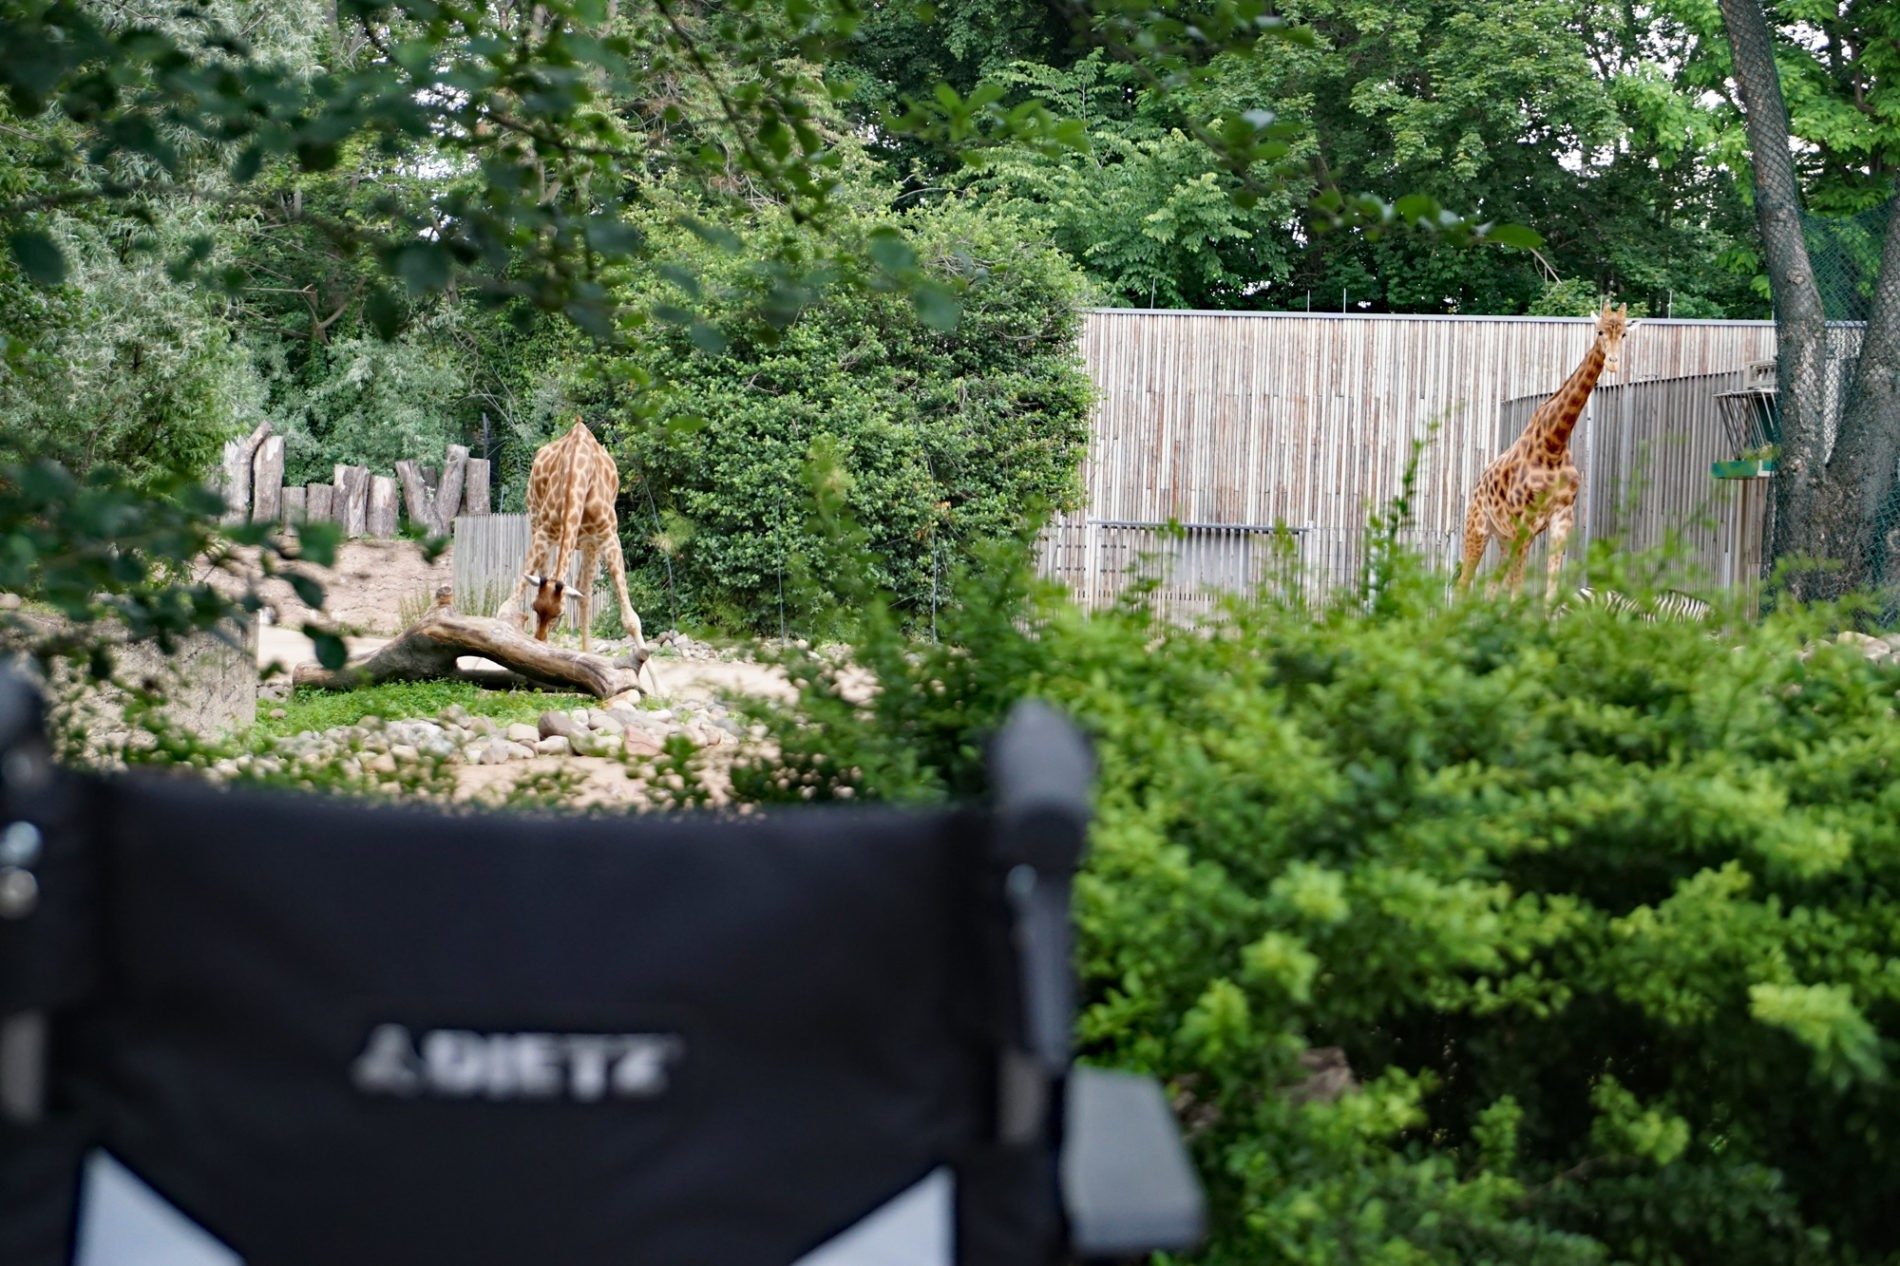 Wheelchair outside giraffe enclosure.